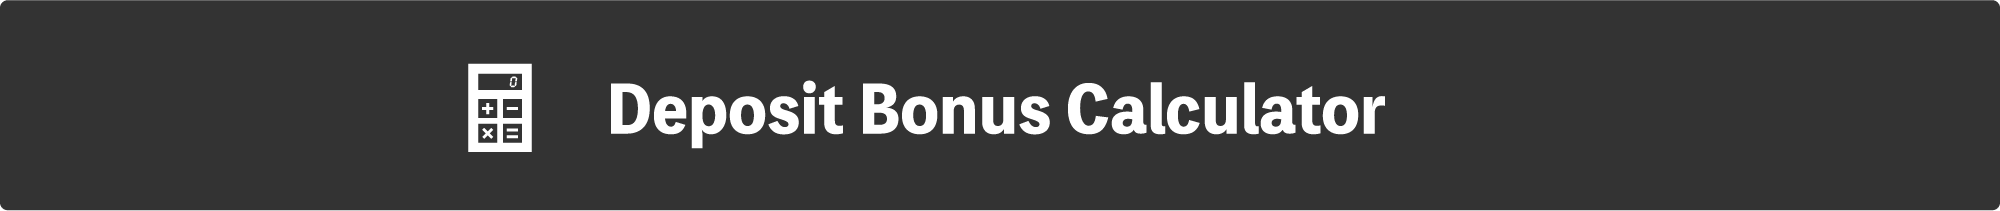 Deposit Bonus Calculator